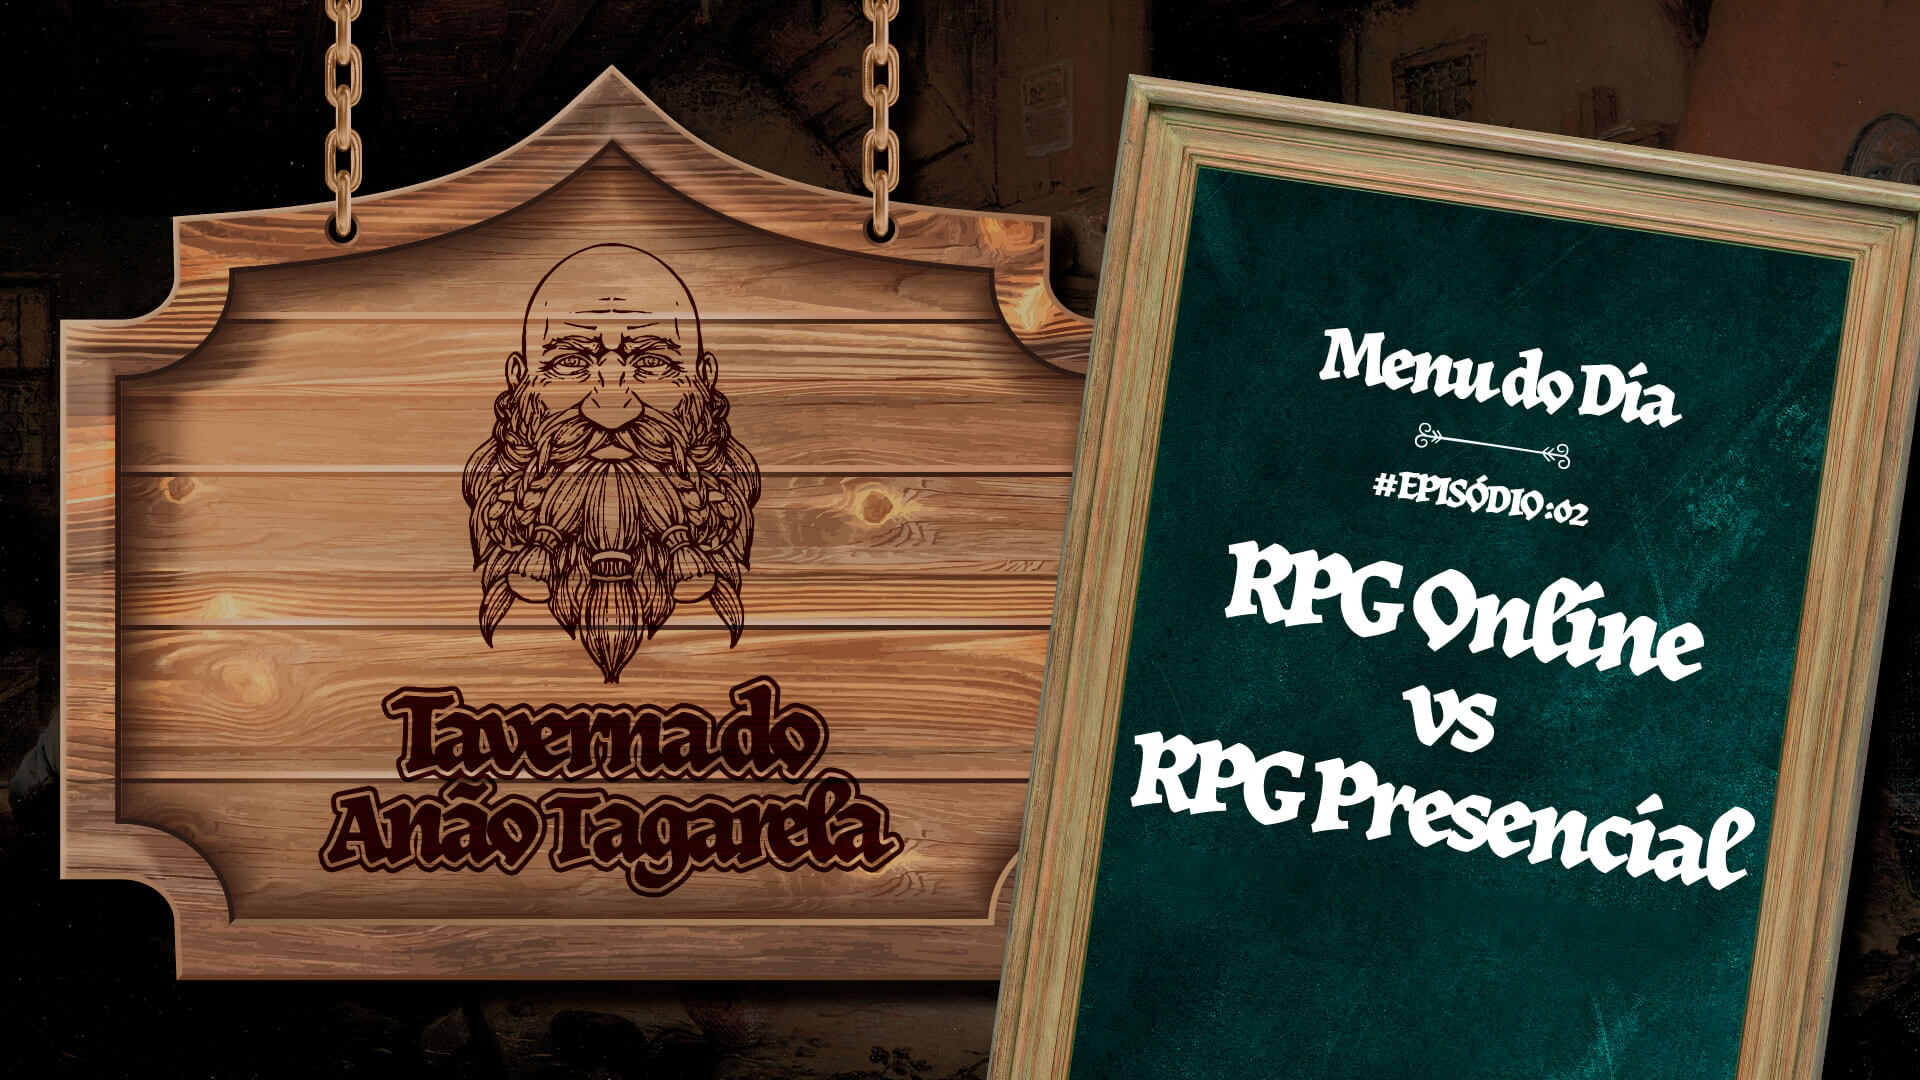 RPG Online VS RPG Presencial – Taverna do Anão Tagarela #02